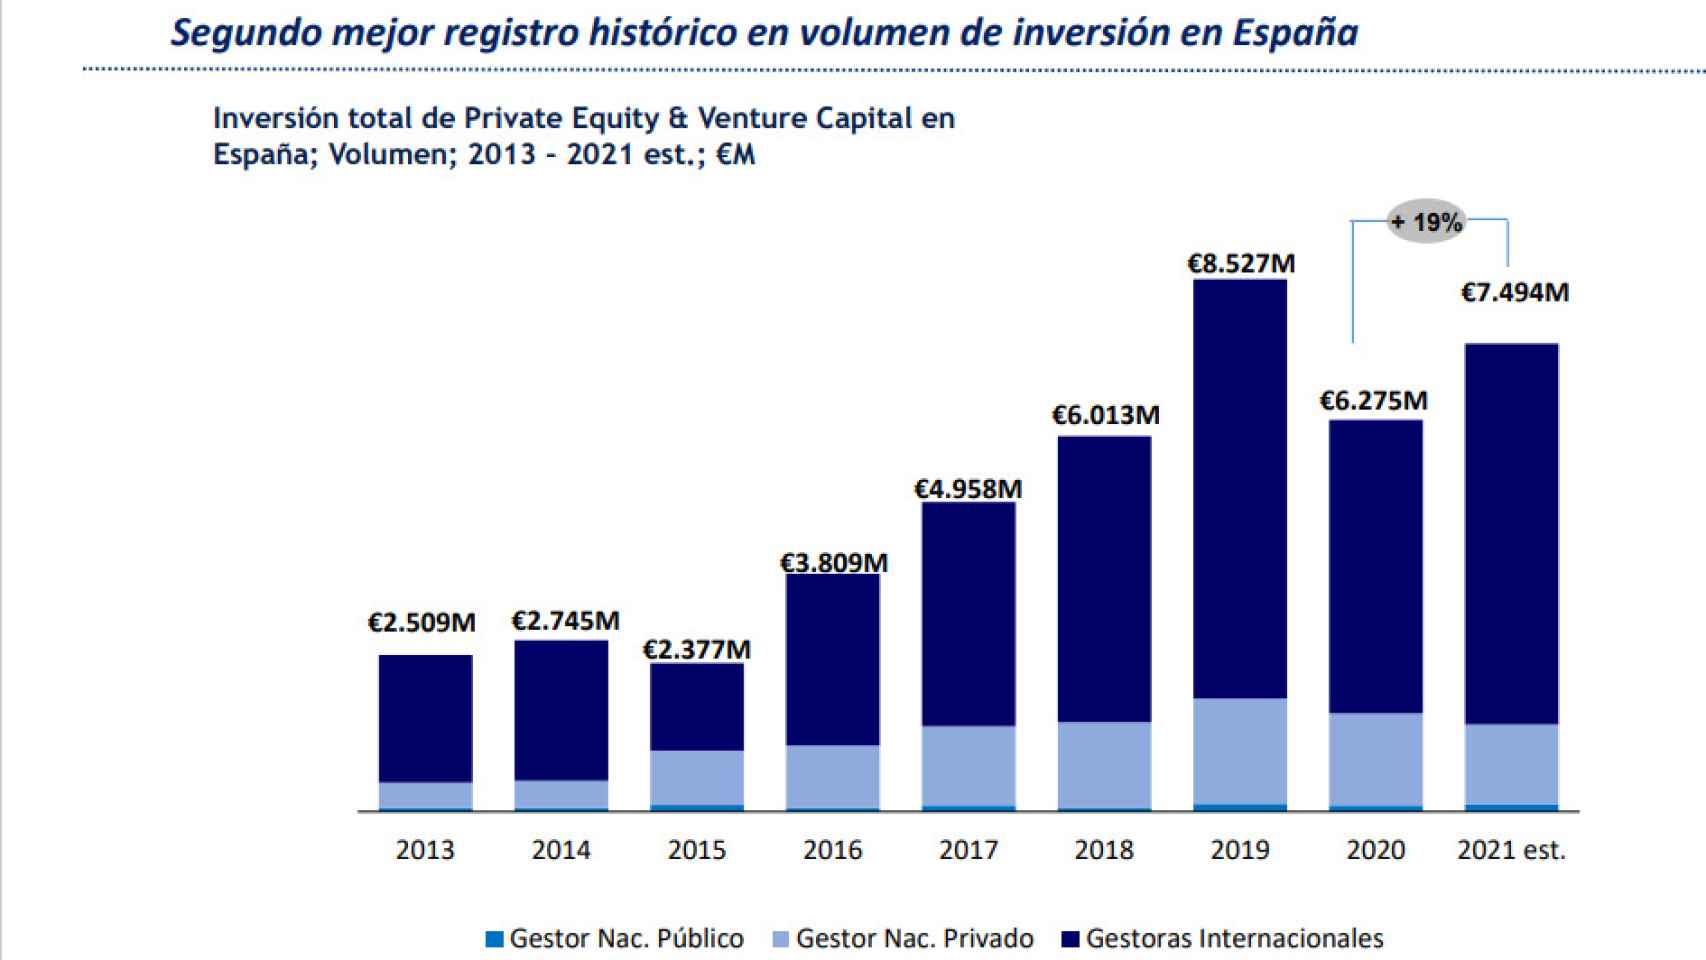 El 'private equity' y 'venture capital' logran el segundo mejor registro en volumen de inversión en España.